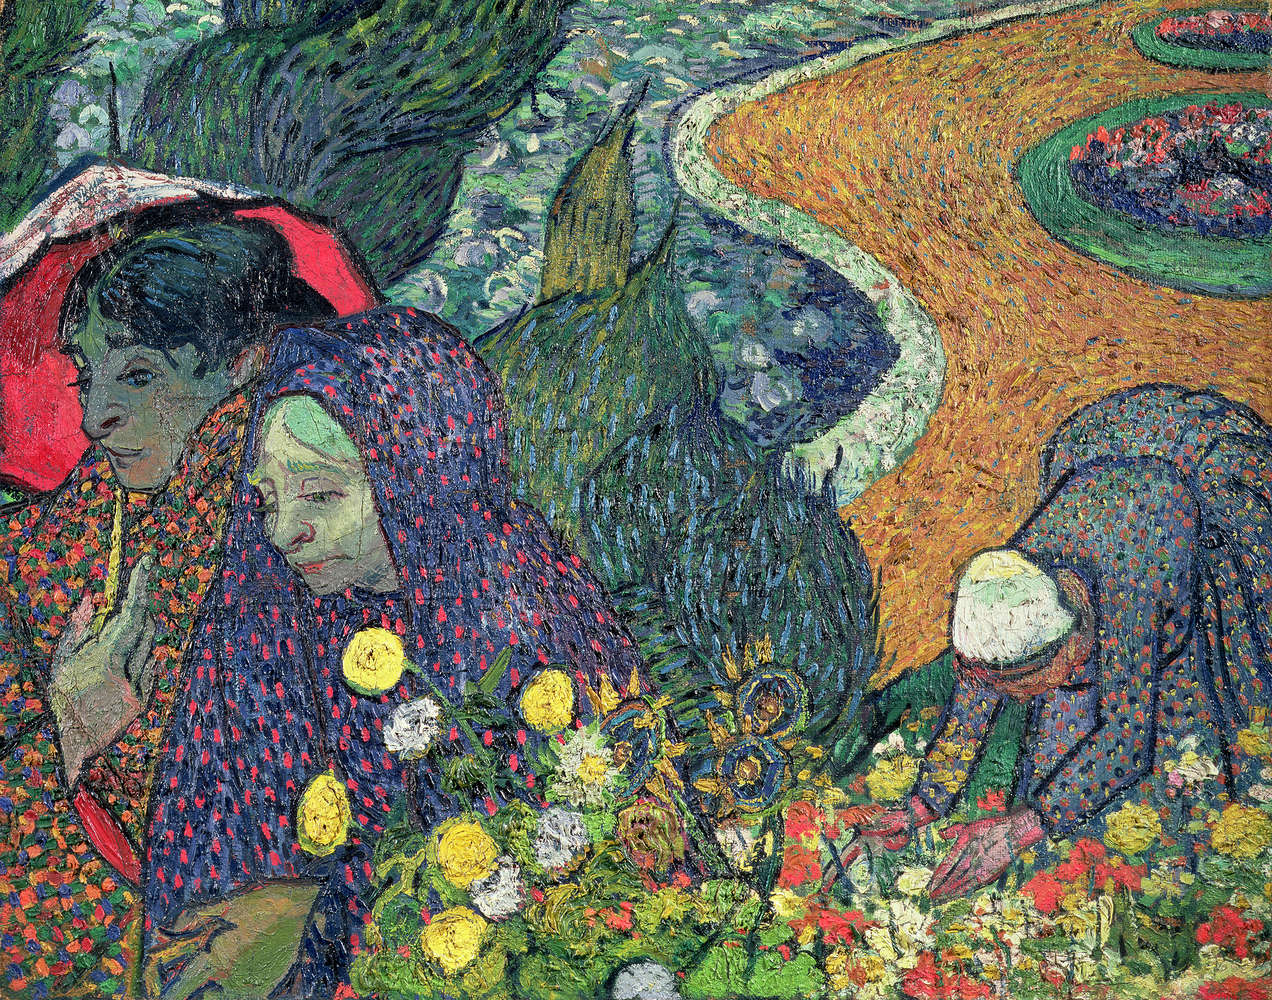             Papier peint panoramique "Promenade Arles" de Vincent van Gogh
        